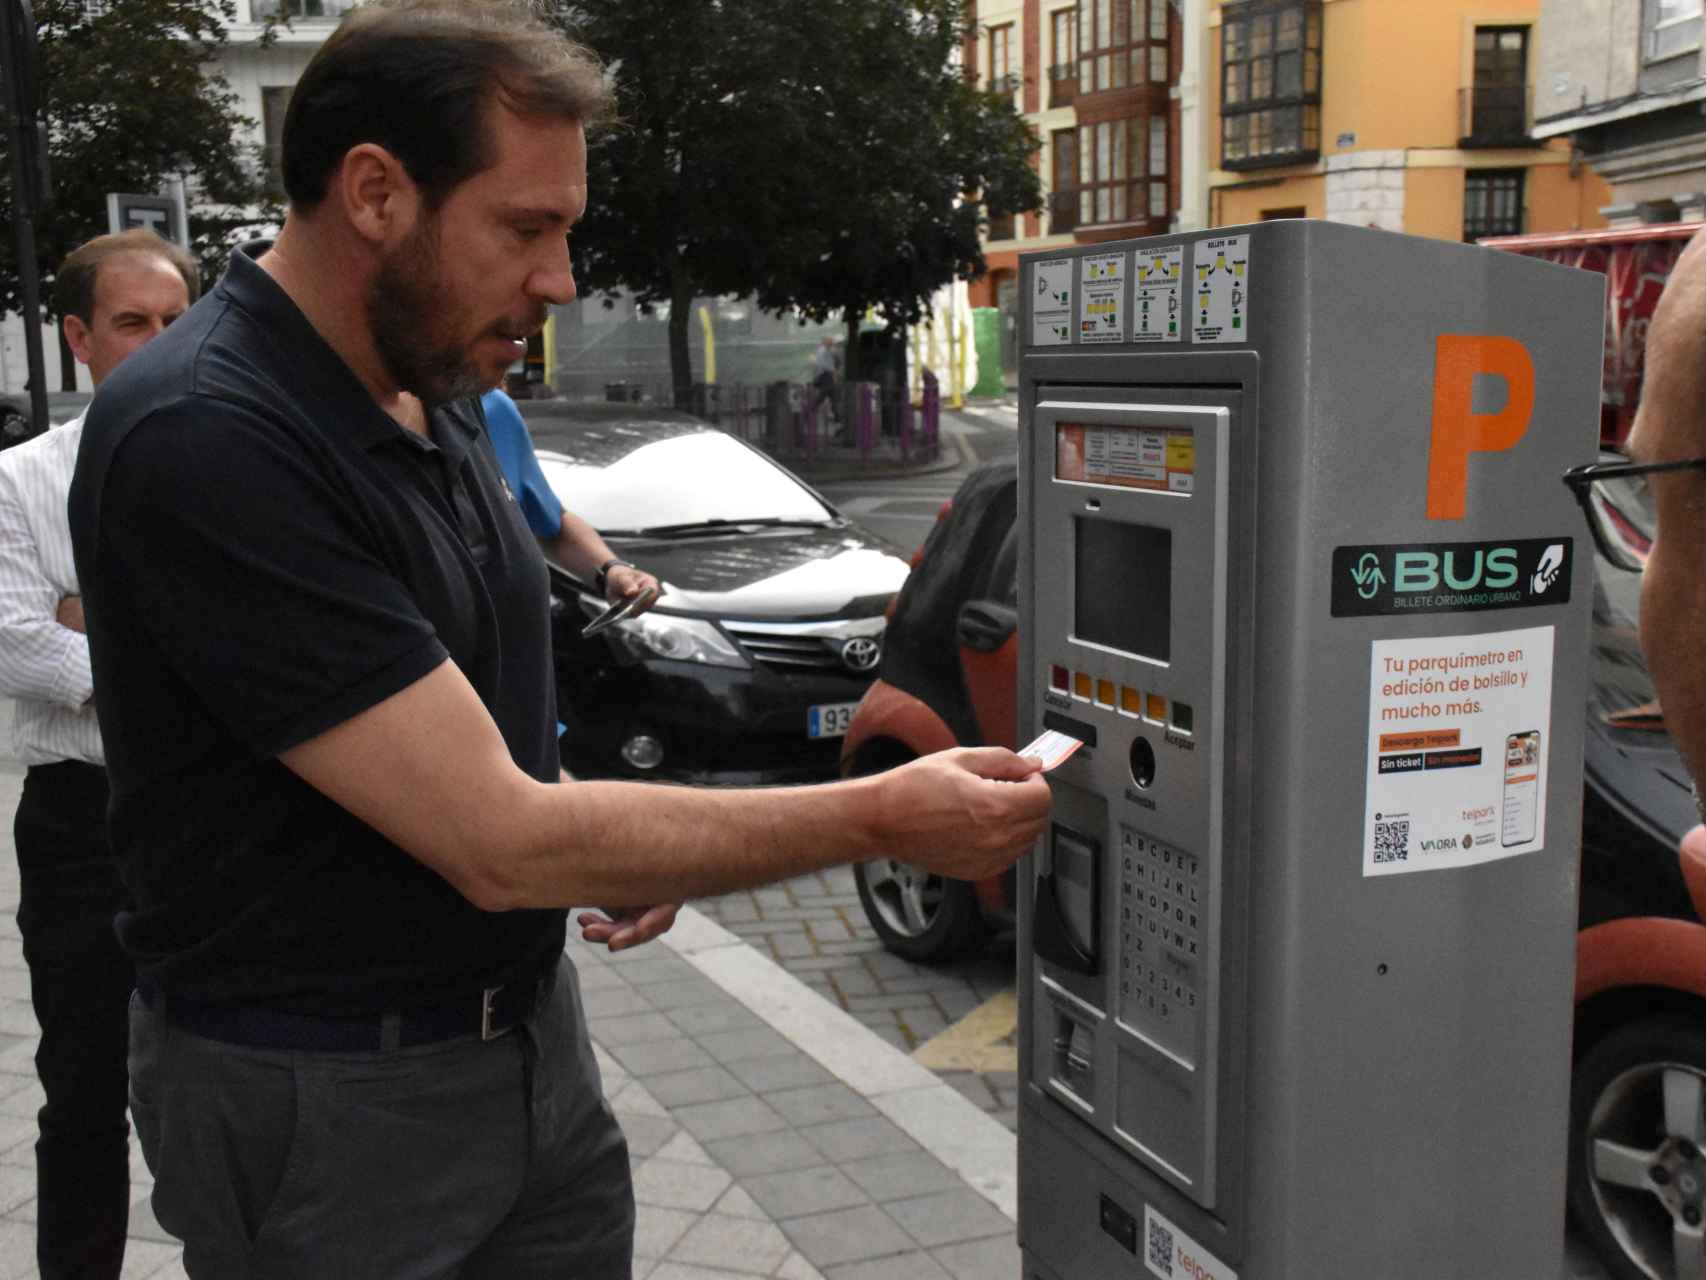 Óscar Puente saca un billete de bus ordinario en un parquímetro de Valladolid.